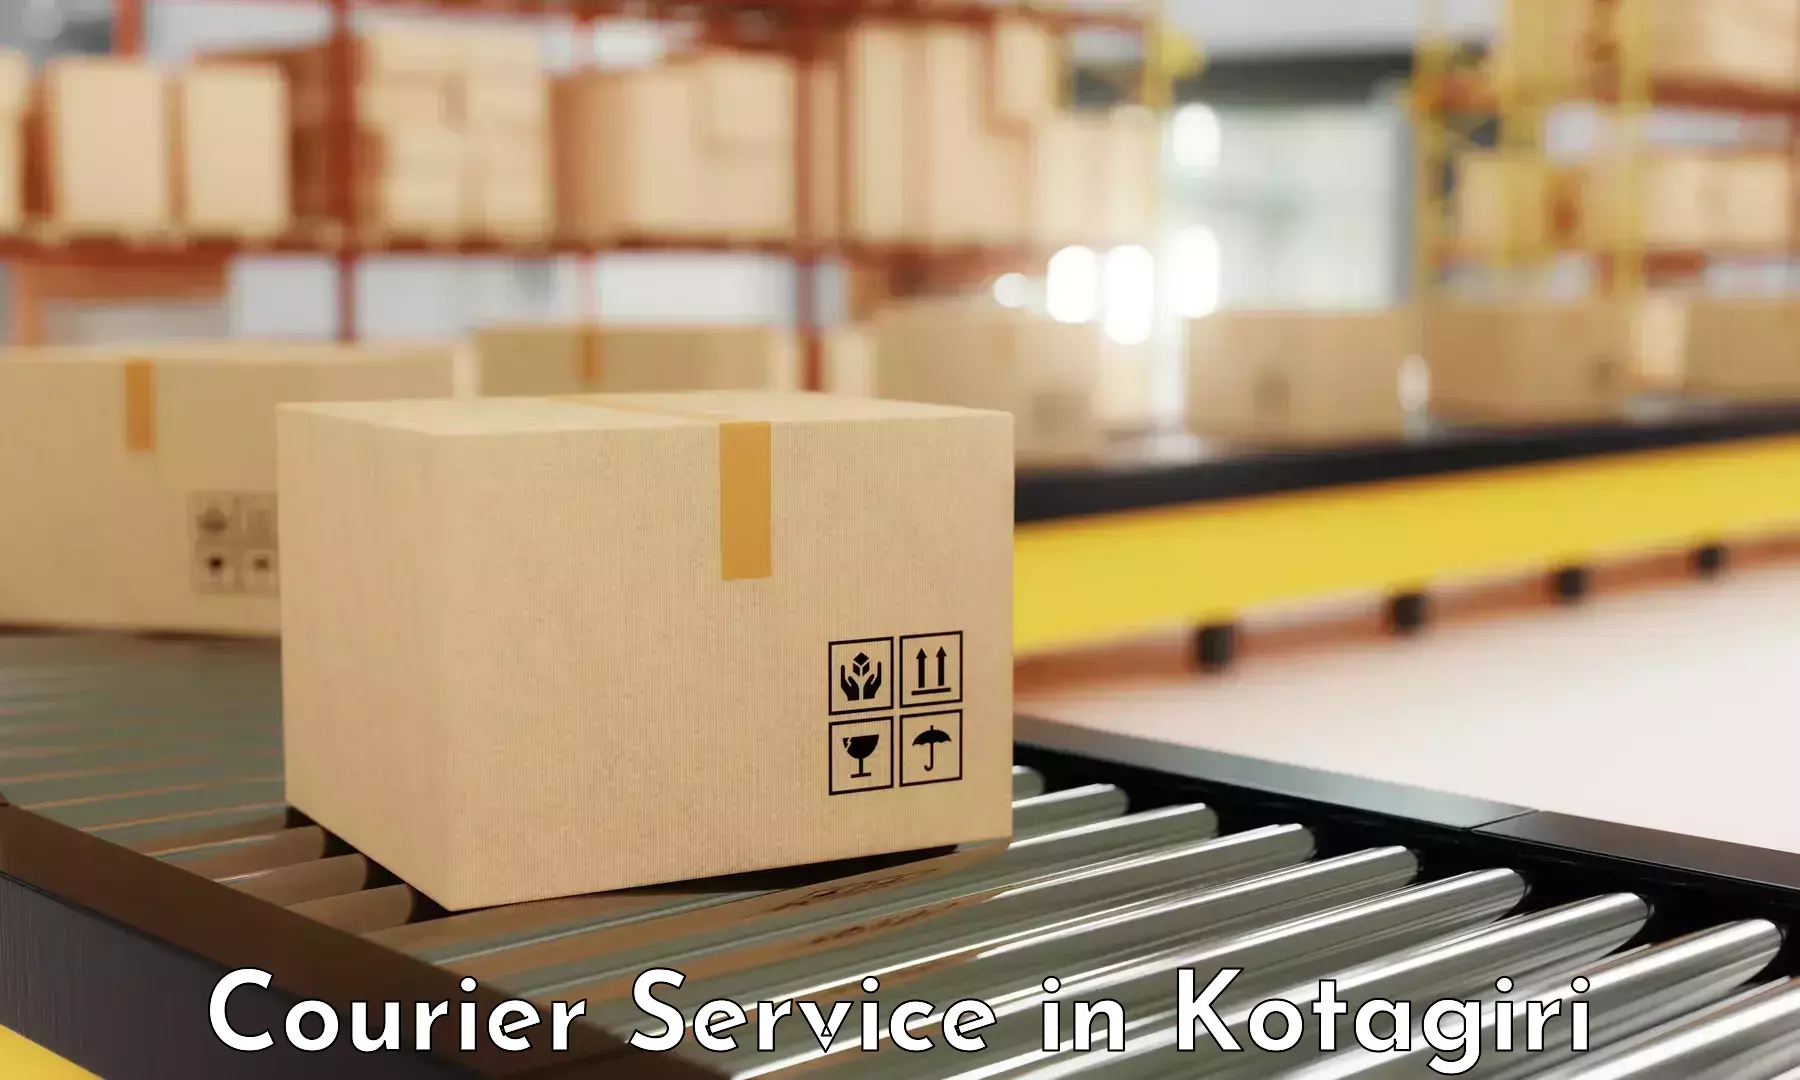 Affordable parcel service in Kotagiri